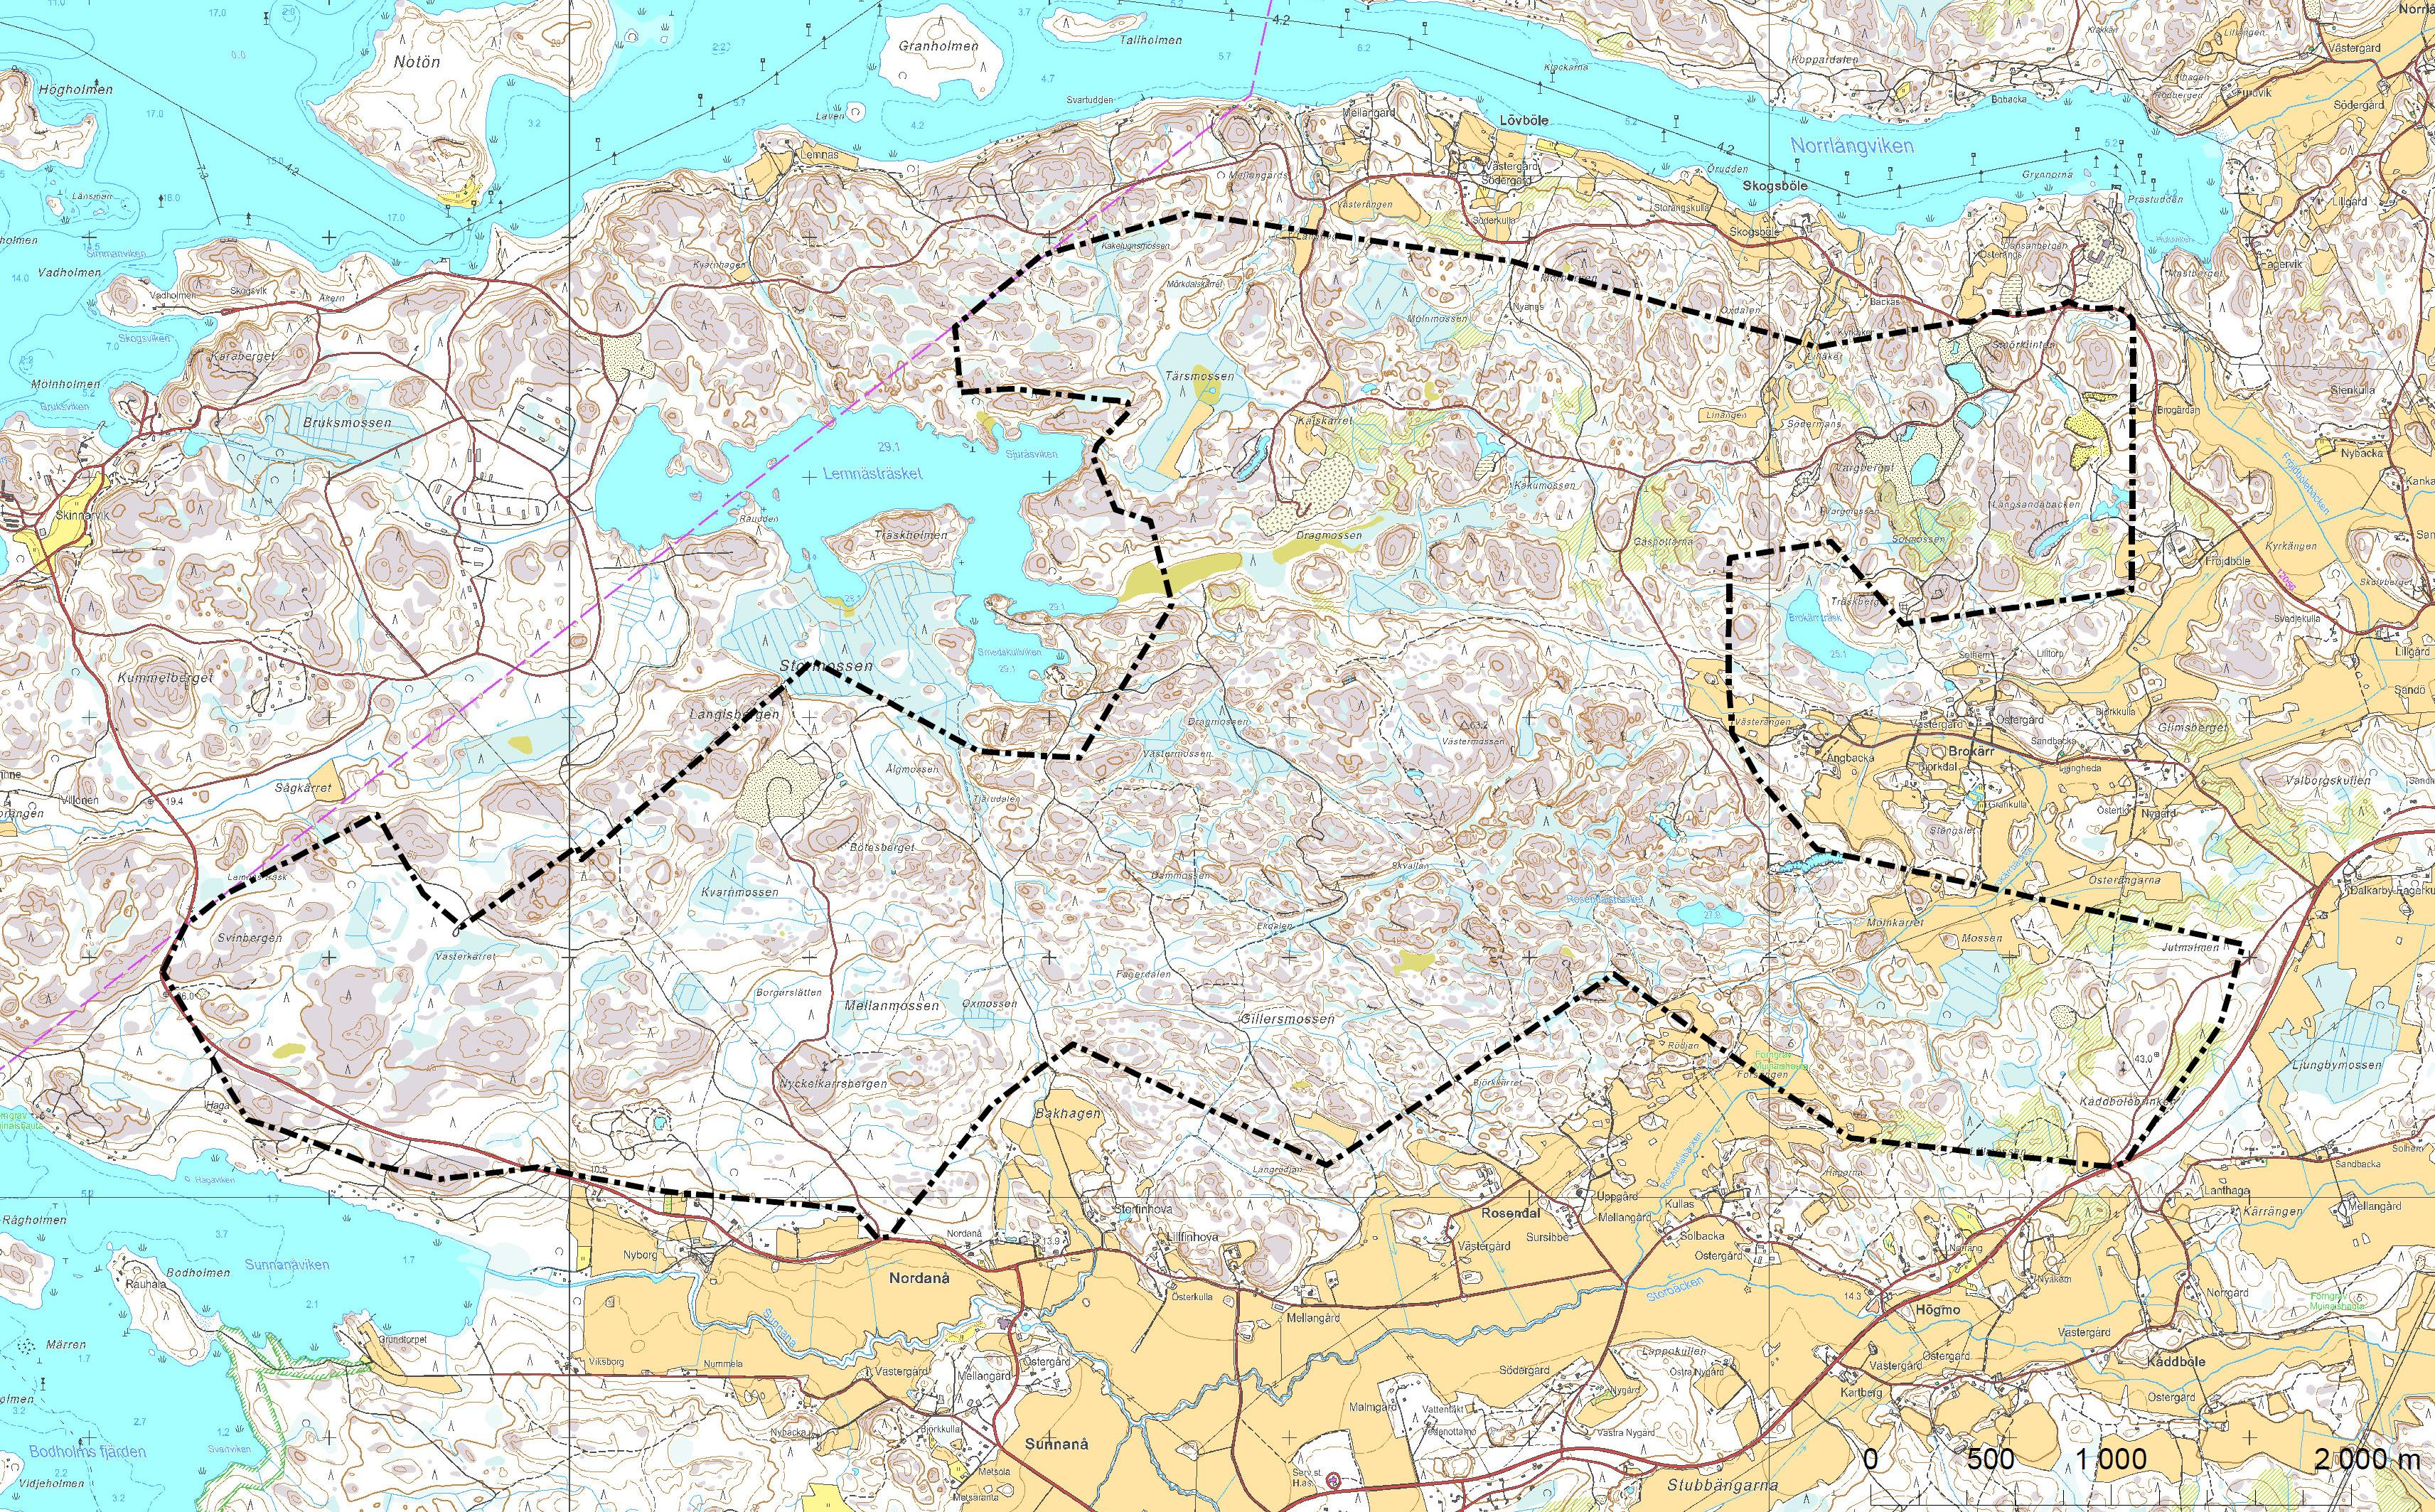 1. SIJAINTI JA NYKYTILANNE Kaavoitettava alue sijaitsee Brokärrin, Lövbölen, Nordanån ja Skinnarvikin välisellä laajalla metsäalueella noin 10 km päässä Kemiön keskustasta lounaaseen.